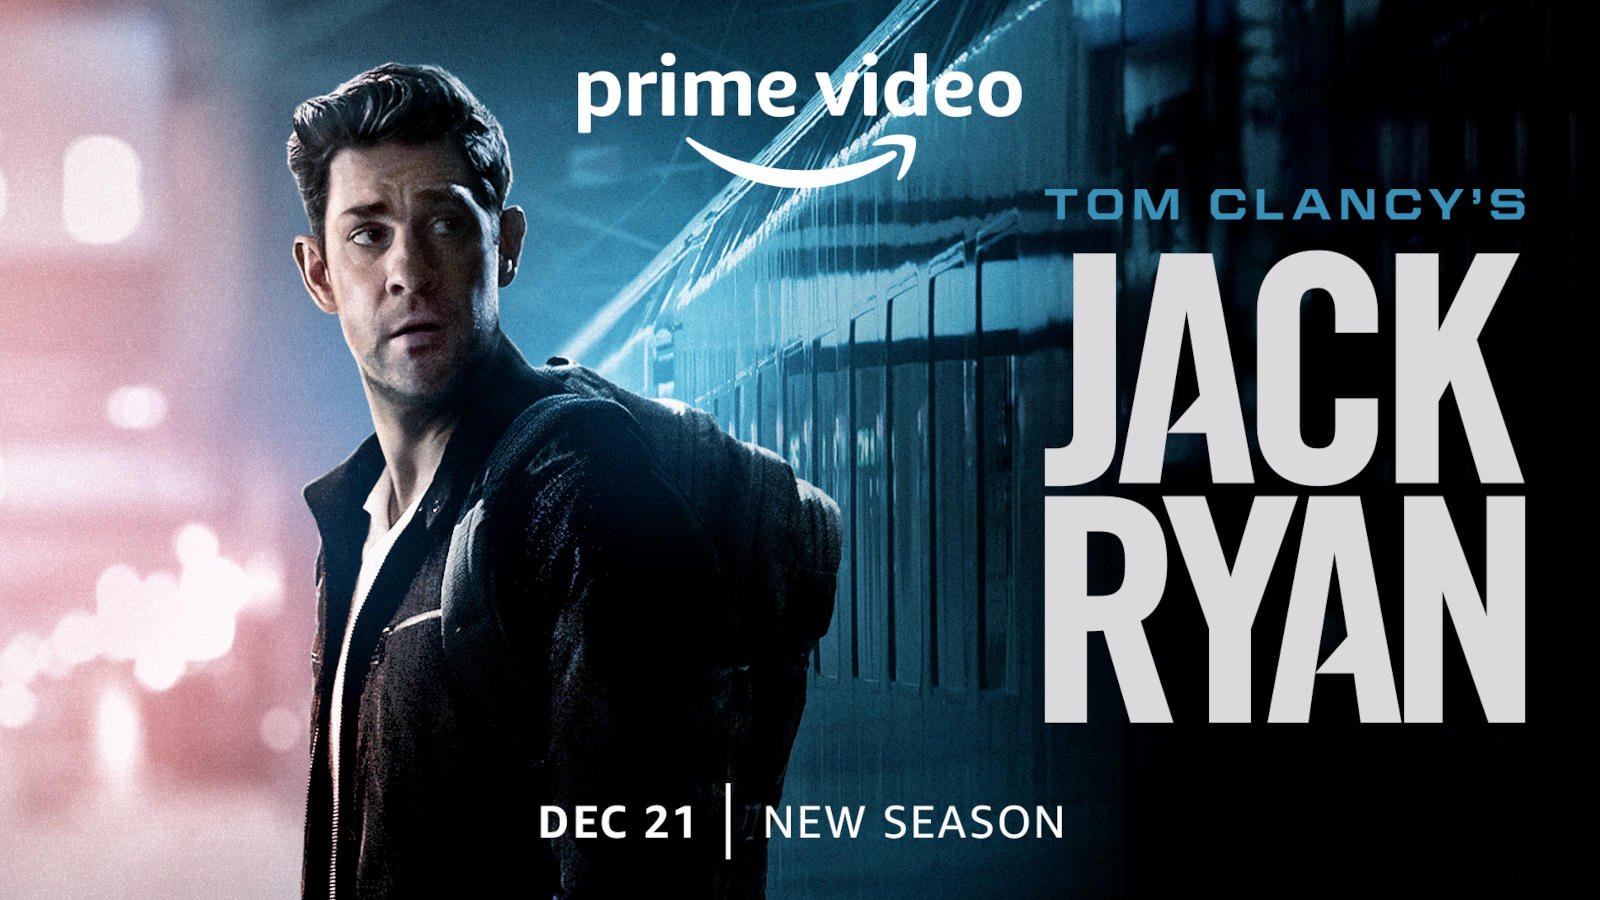 Premiär för Jack Ryan säsong 3 på Prime Video